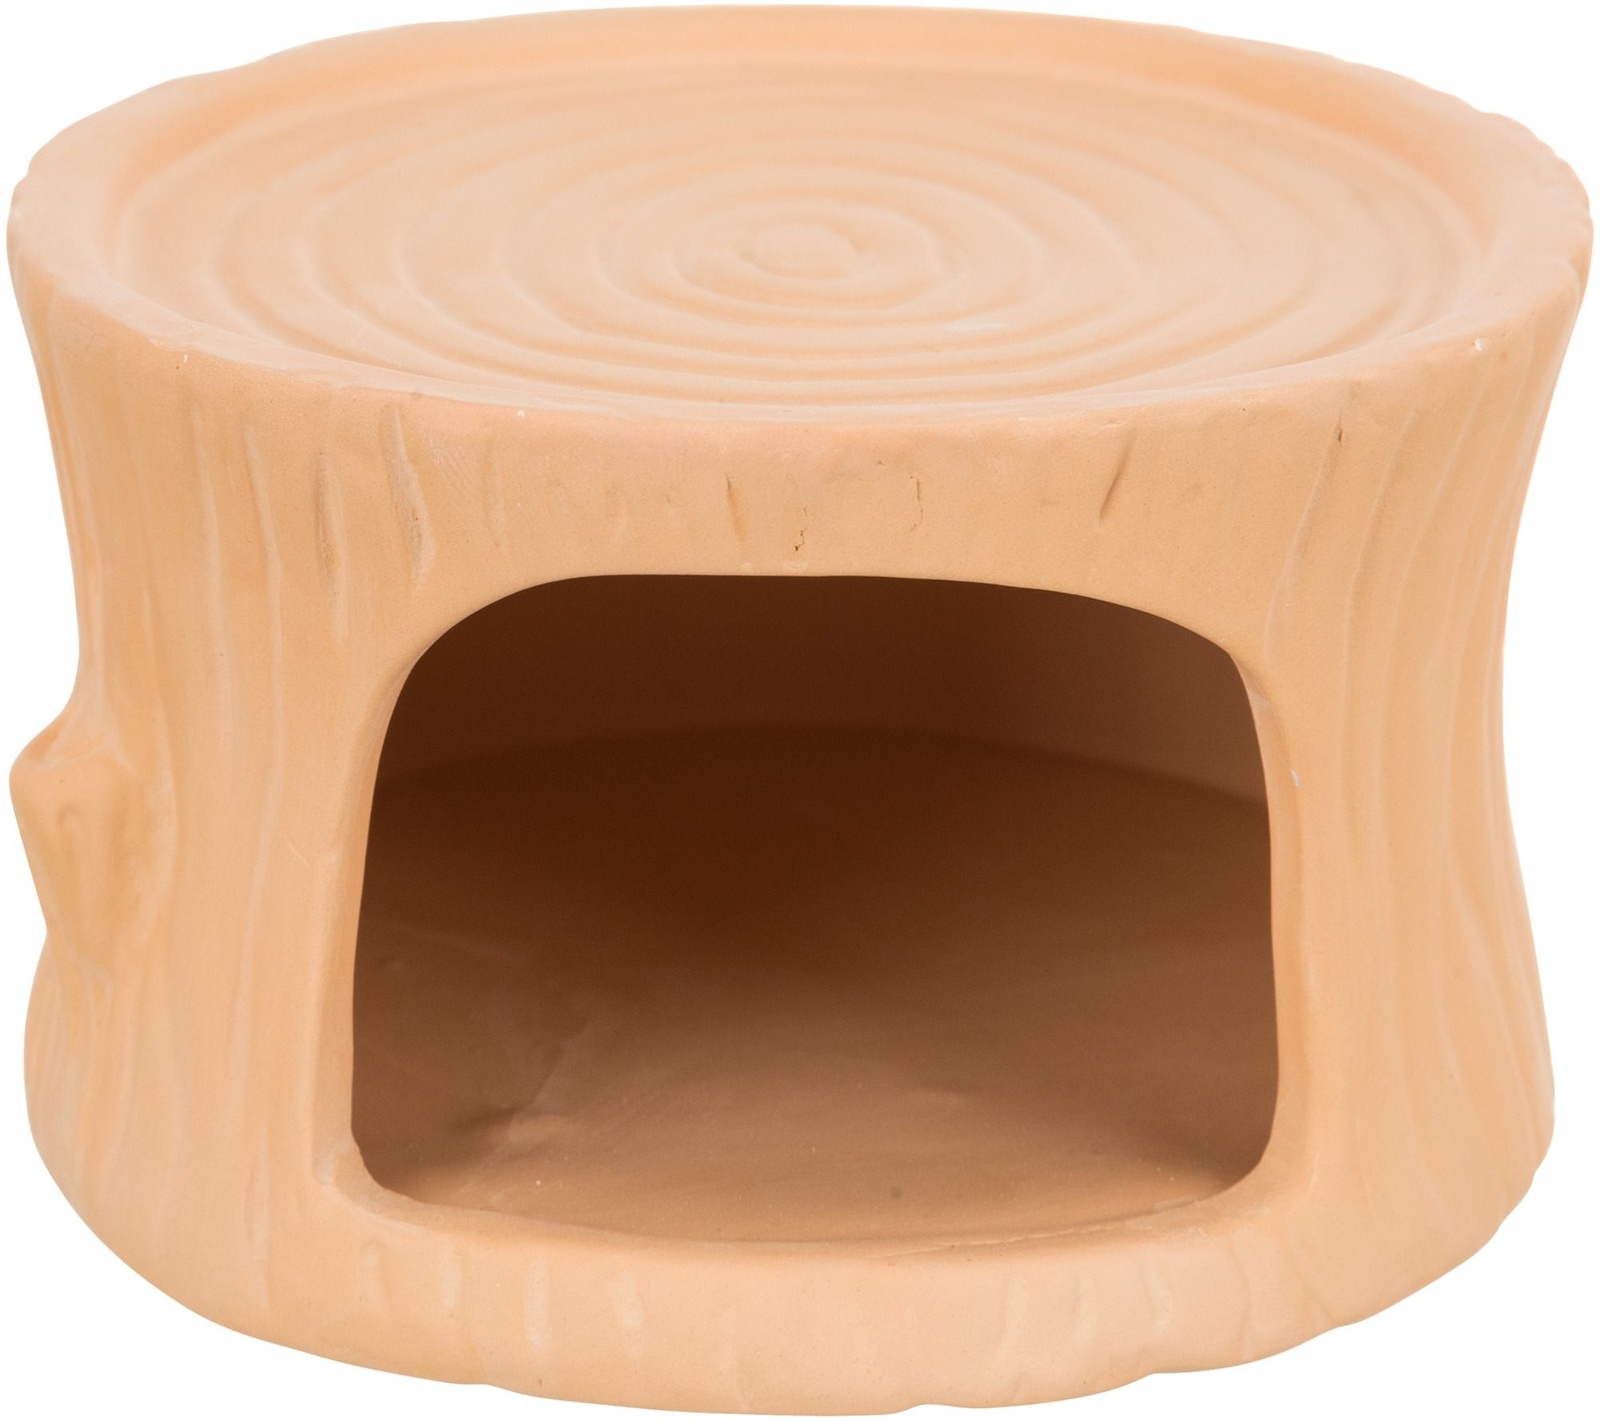 Trixie Trixie домик для мышей и хомяков, керамика, 11 x 6 x 10 см, терракотовый (275 г) trixie гамак для хомяков и мышей 18 см×18 см